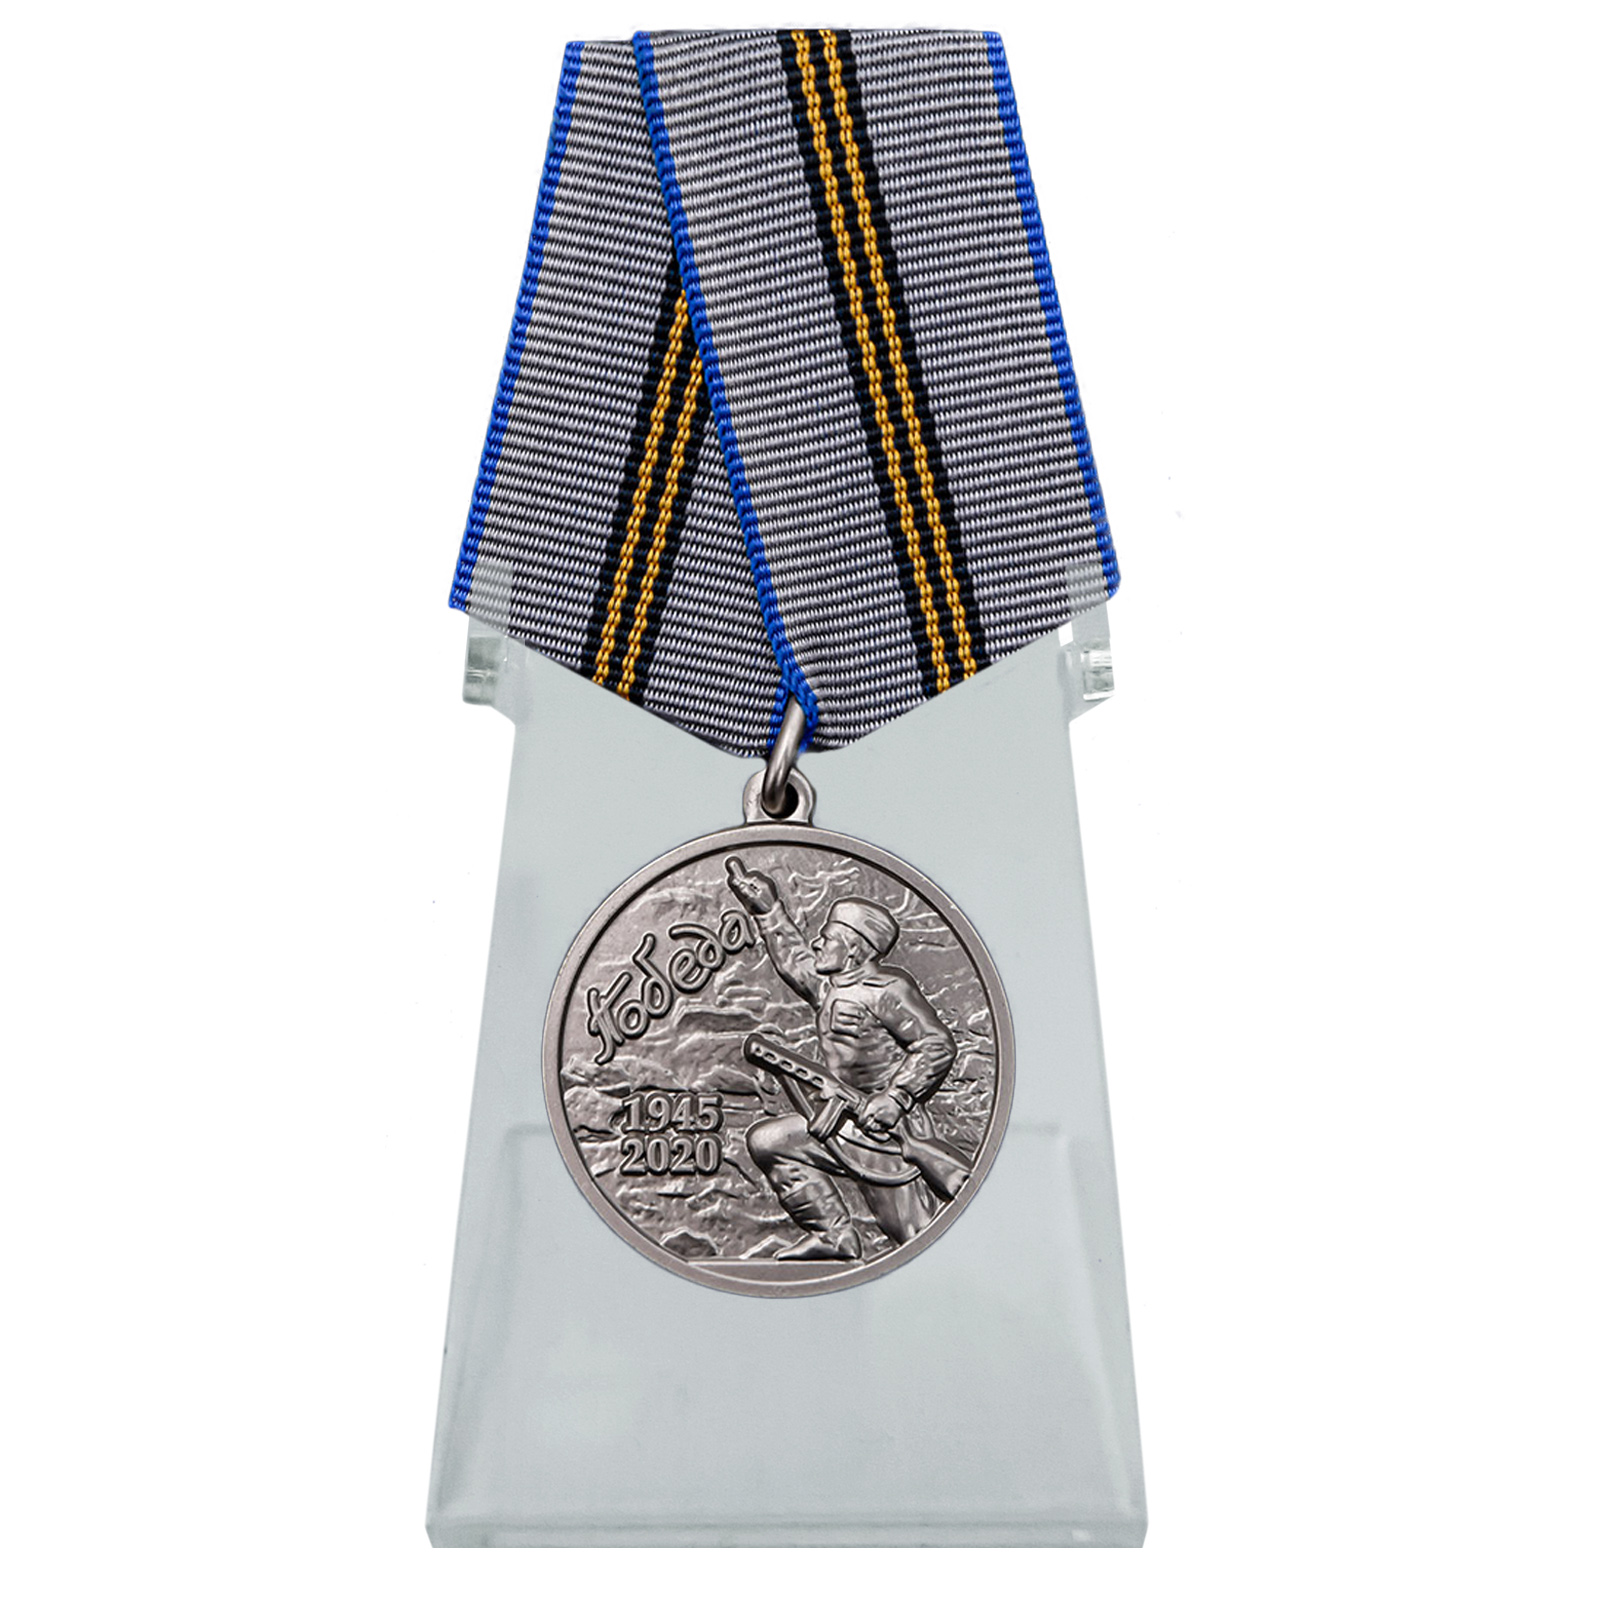 Купить медаль День Победы в ВОВ 1941-1945 гг. на подставке по выгодной цене